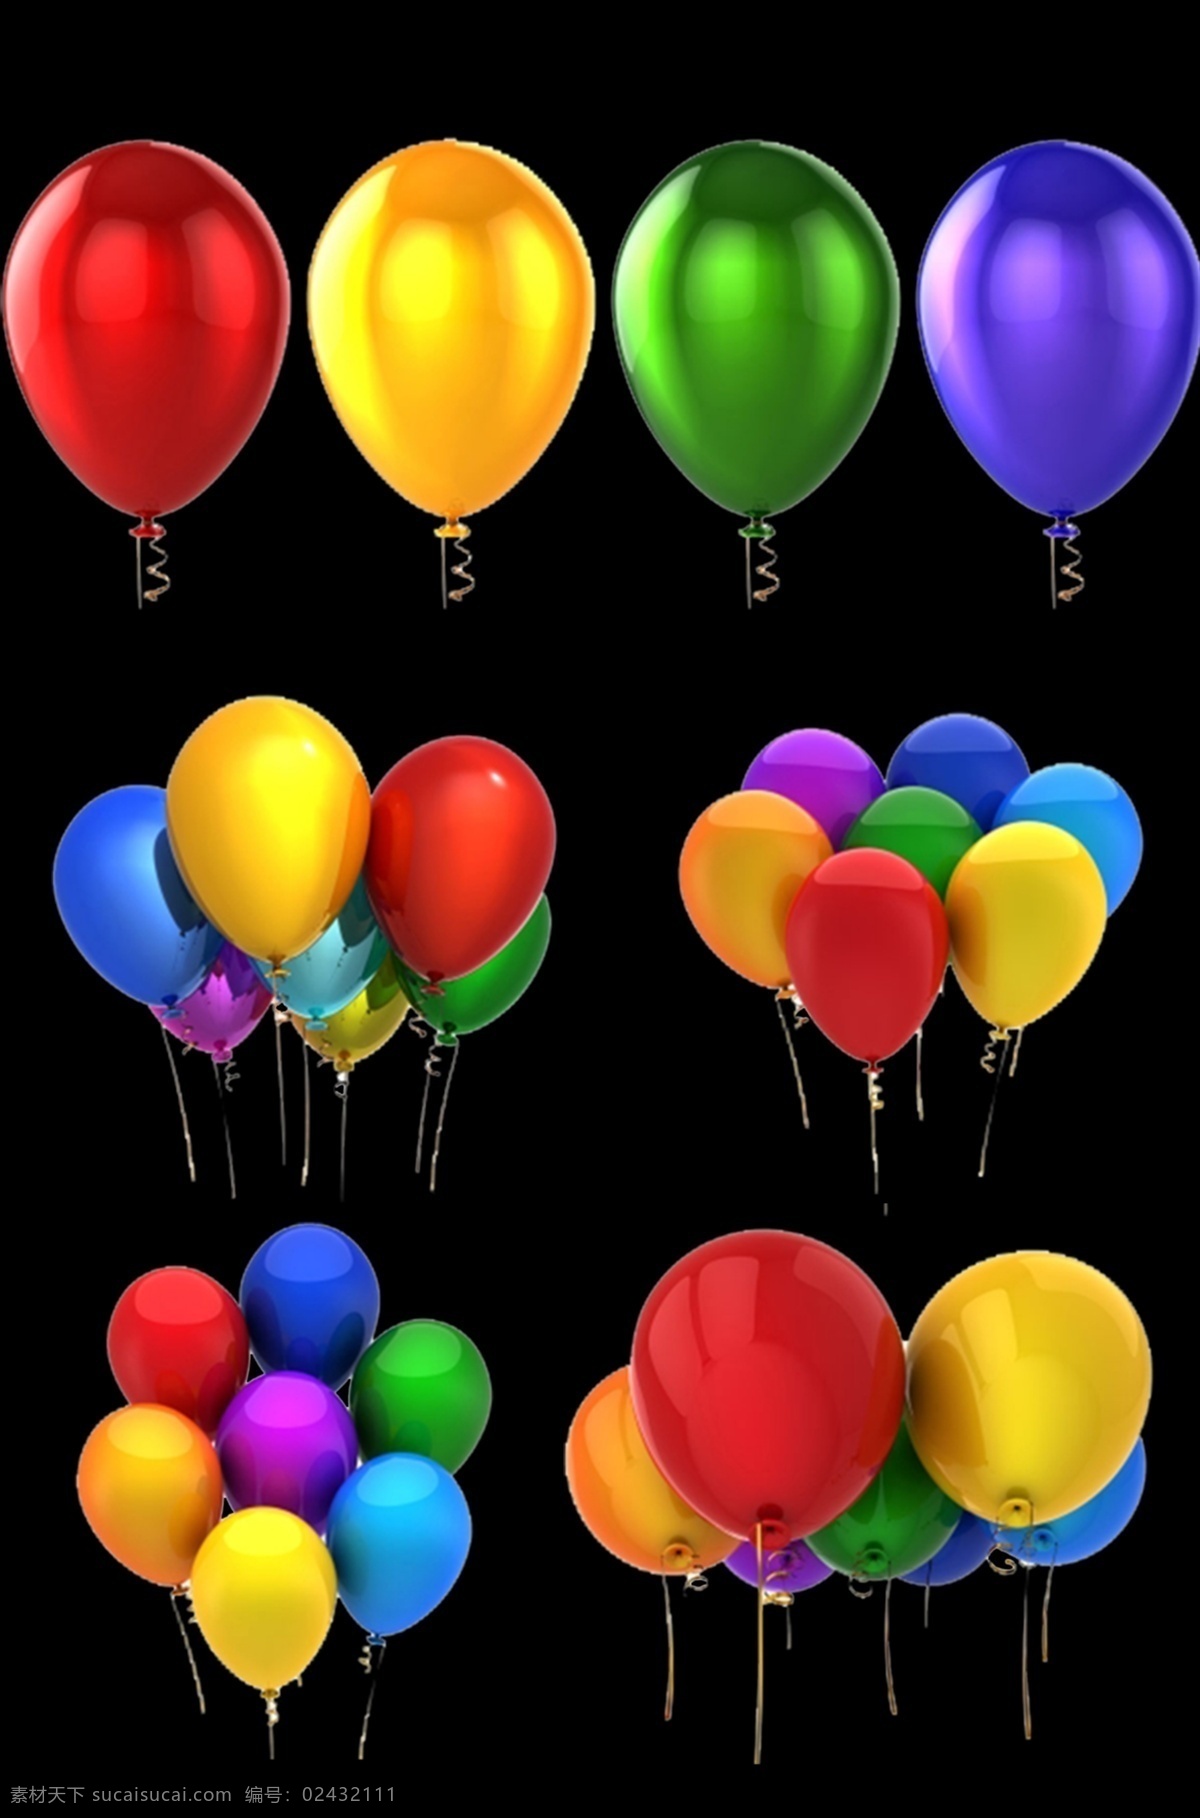 彩色 缤纷 气球 矢量 图形 创意活动气球 创意素材 气球元素素材 活动素材 彩色缤纷气球 气球免扣素材 彩色气球素材 彩色气球元素 蓝气球 红气球 粉气球 心 广告设计素材 气球矢量图 矢量图卡通 矢量气球 动漫 气球素材 节日气球 生日气球 彩色气球 彩 分层